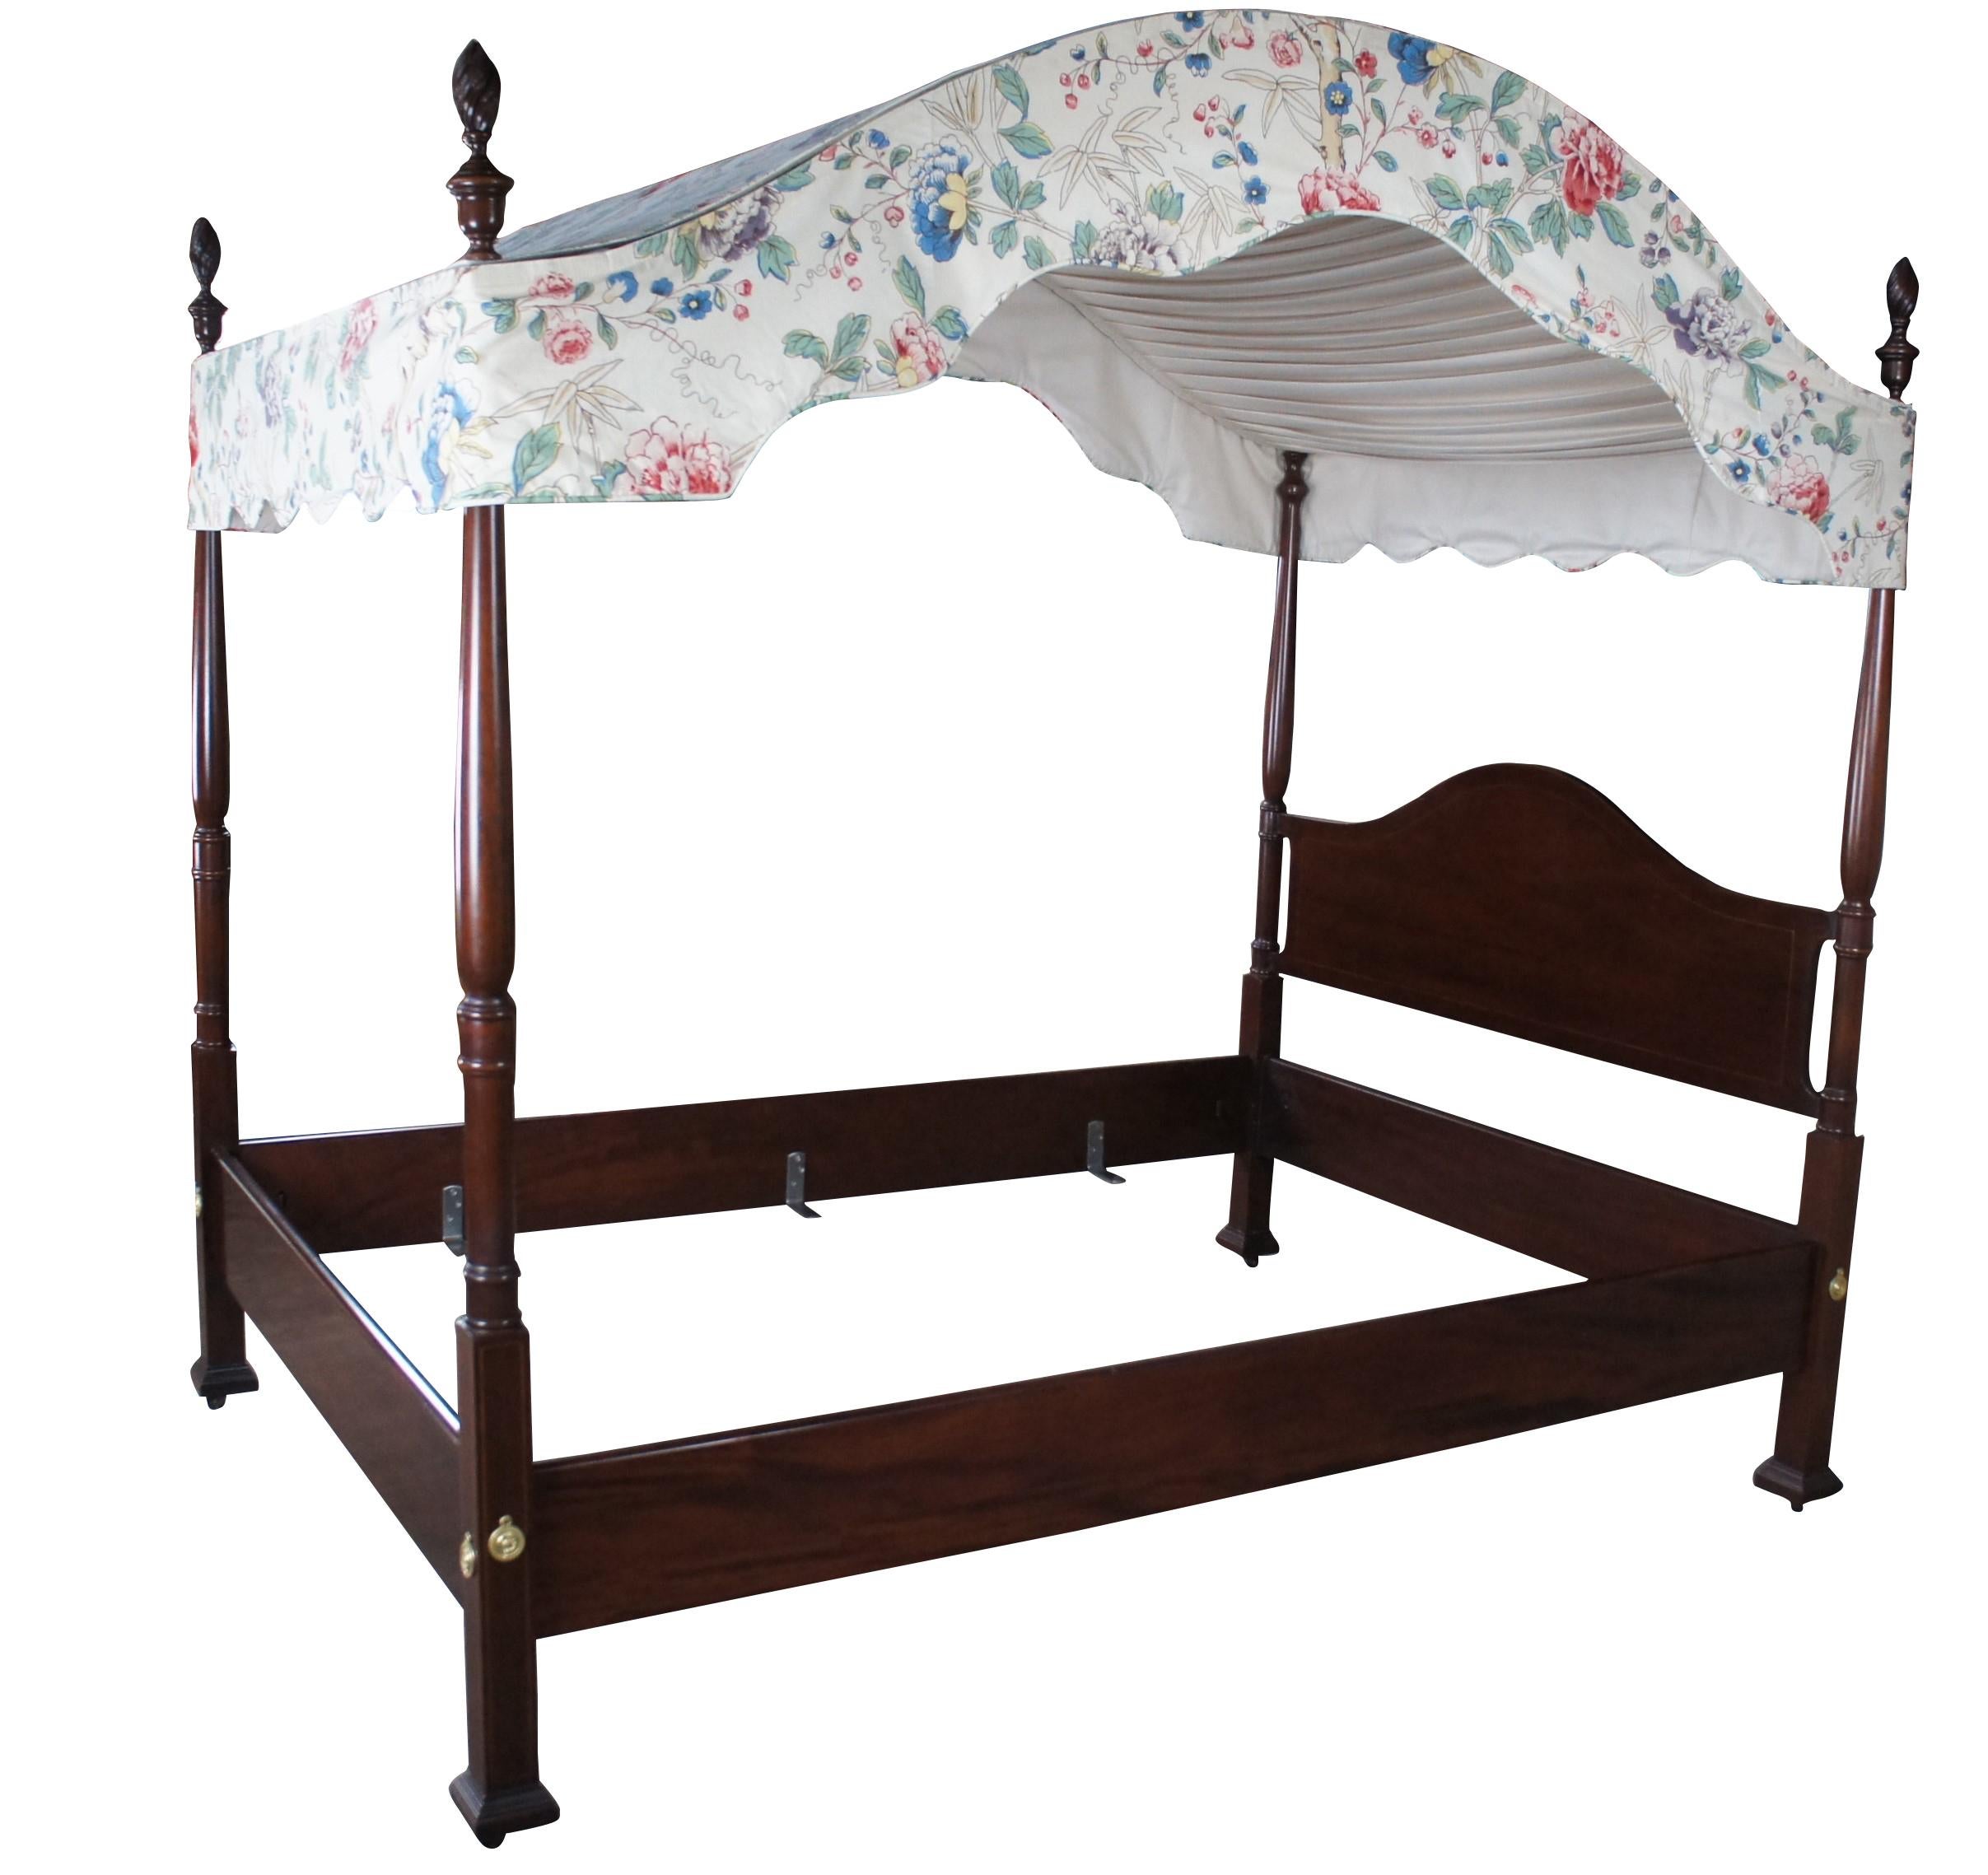 Ein beeindruckendes Mahagoni-Bett mit Intarsien aus dem 20. Jahrhundert im Hepplewhite- und Kolonialstil.  Mit Kamelrücken, durchgehenden Bolzen und Trophäenbecher, gedrechselt und mit geschnitzten Turmzierleisten.  Beinhaltet einen